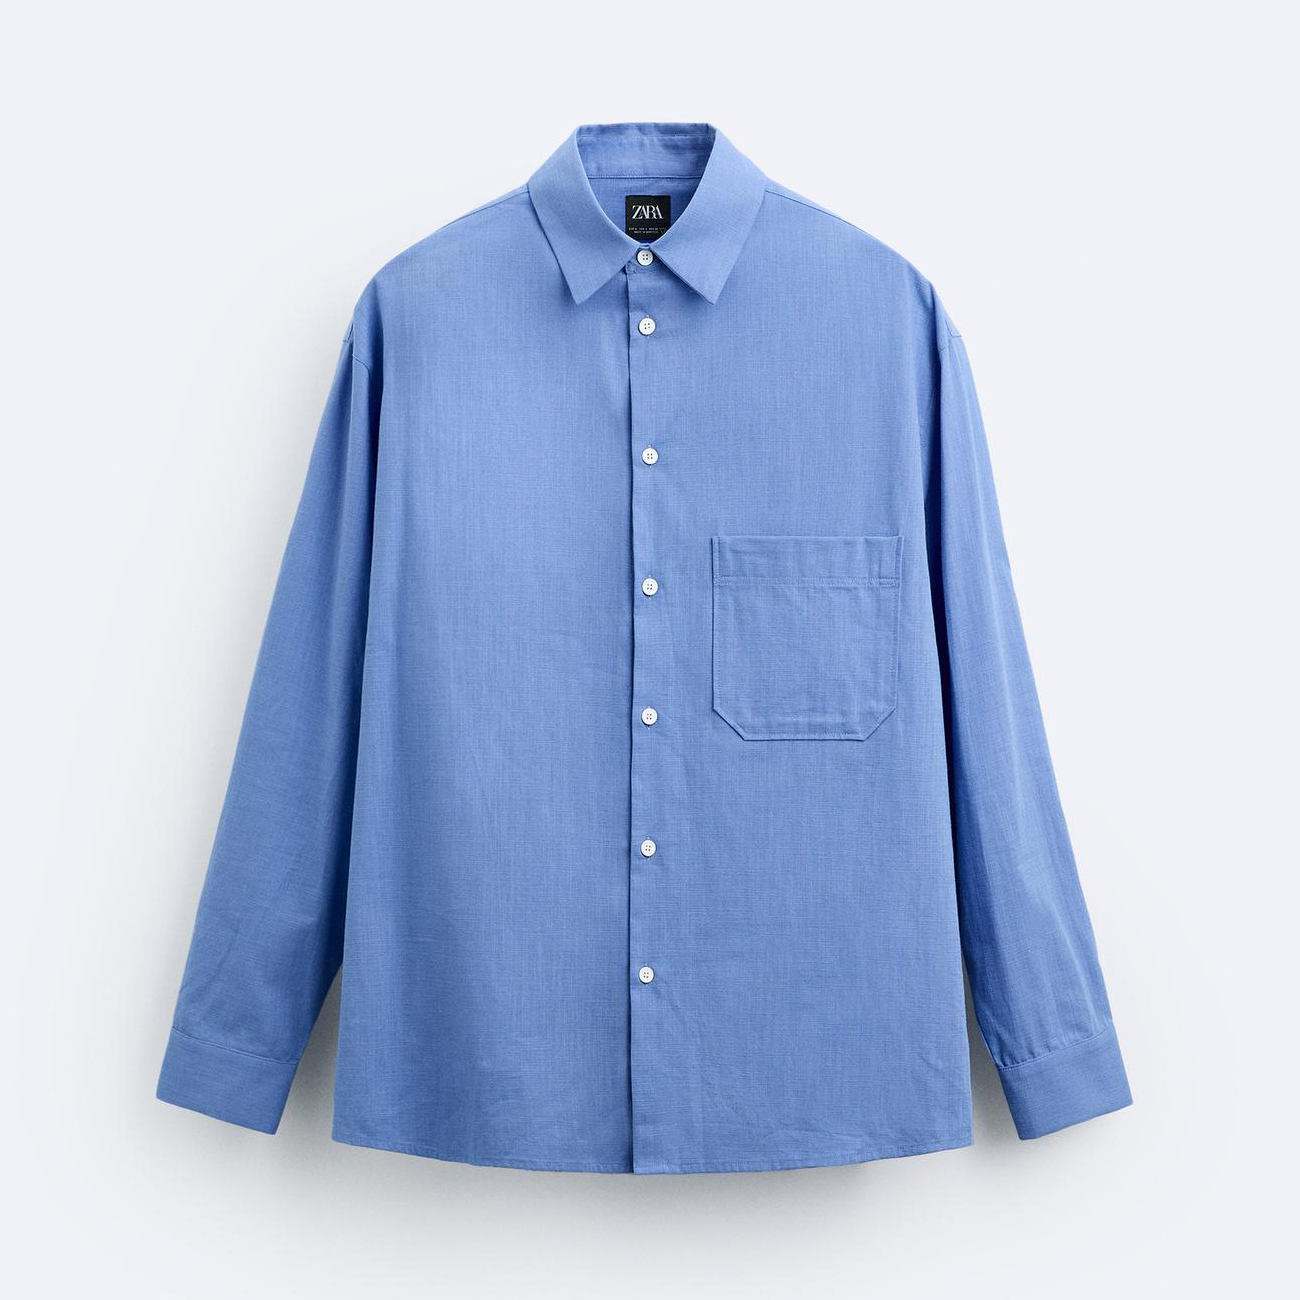 Рубашка Zara Cotton With Pocket, голубой рубашка zara cotton with pocket голубой